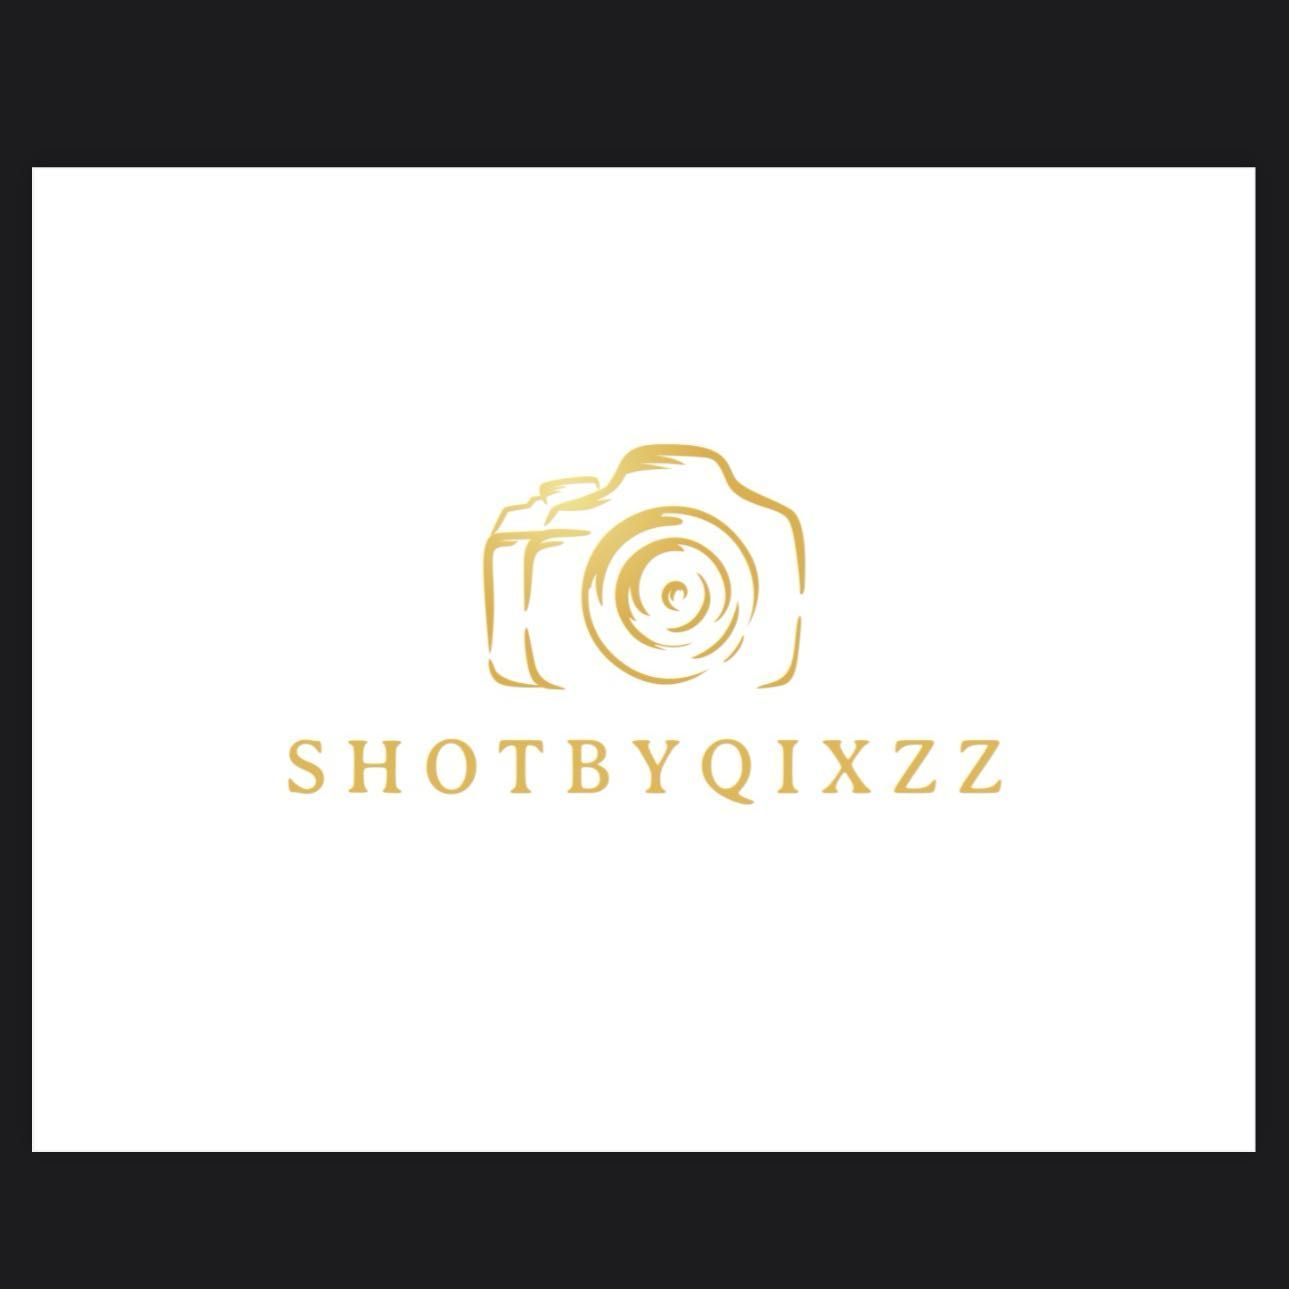 ShotByQixzz, New Orleans, 70112